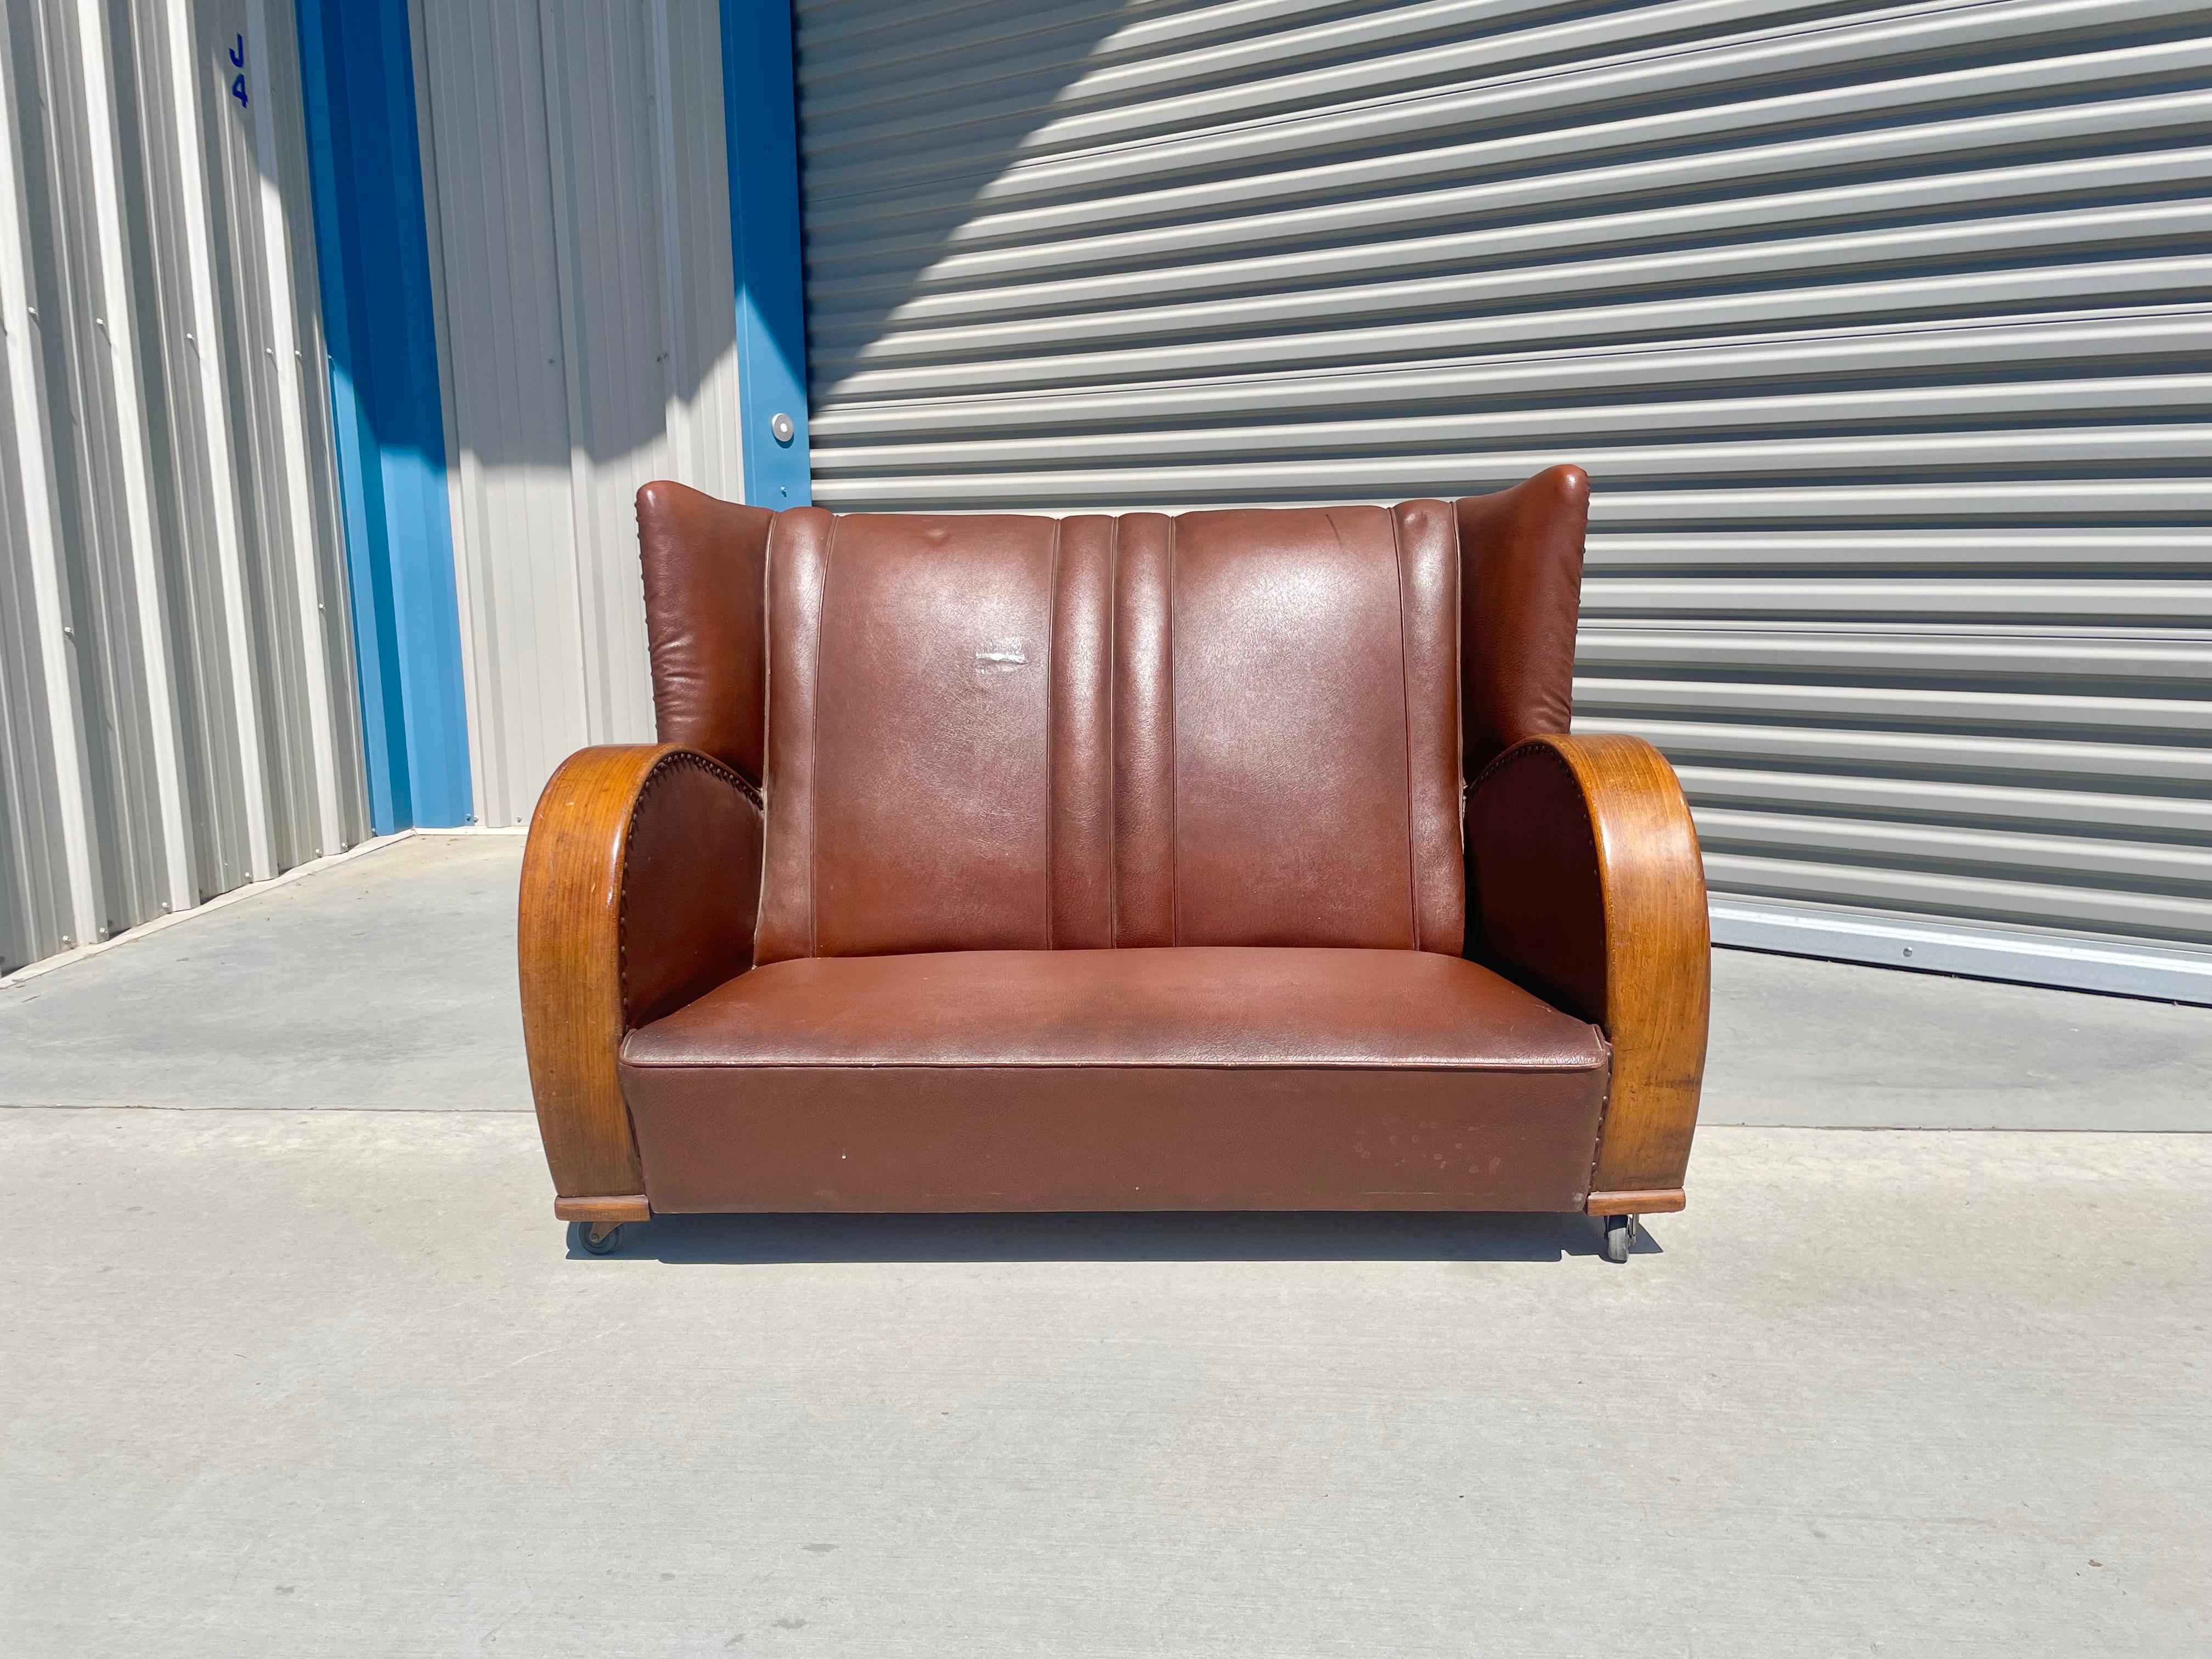 Ledersofa im Art-déco-Stil, hergestellt in den Vereinigten Staaten, um 1970. Dieser schöne Sessel verfügt über zwei tonnenförmige Armlehnen, die nach unten führen und ihm ein für die damalige Zeit sehr markantes Design verleihen. Der Sessel ist